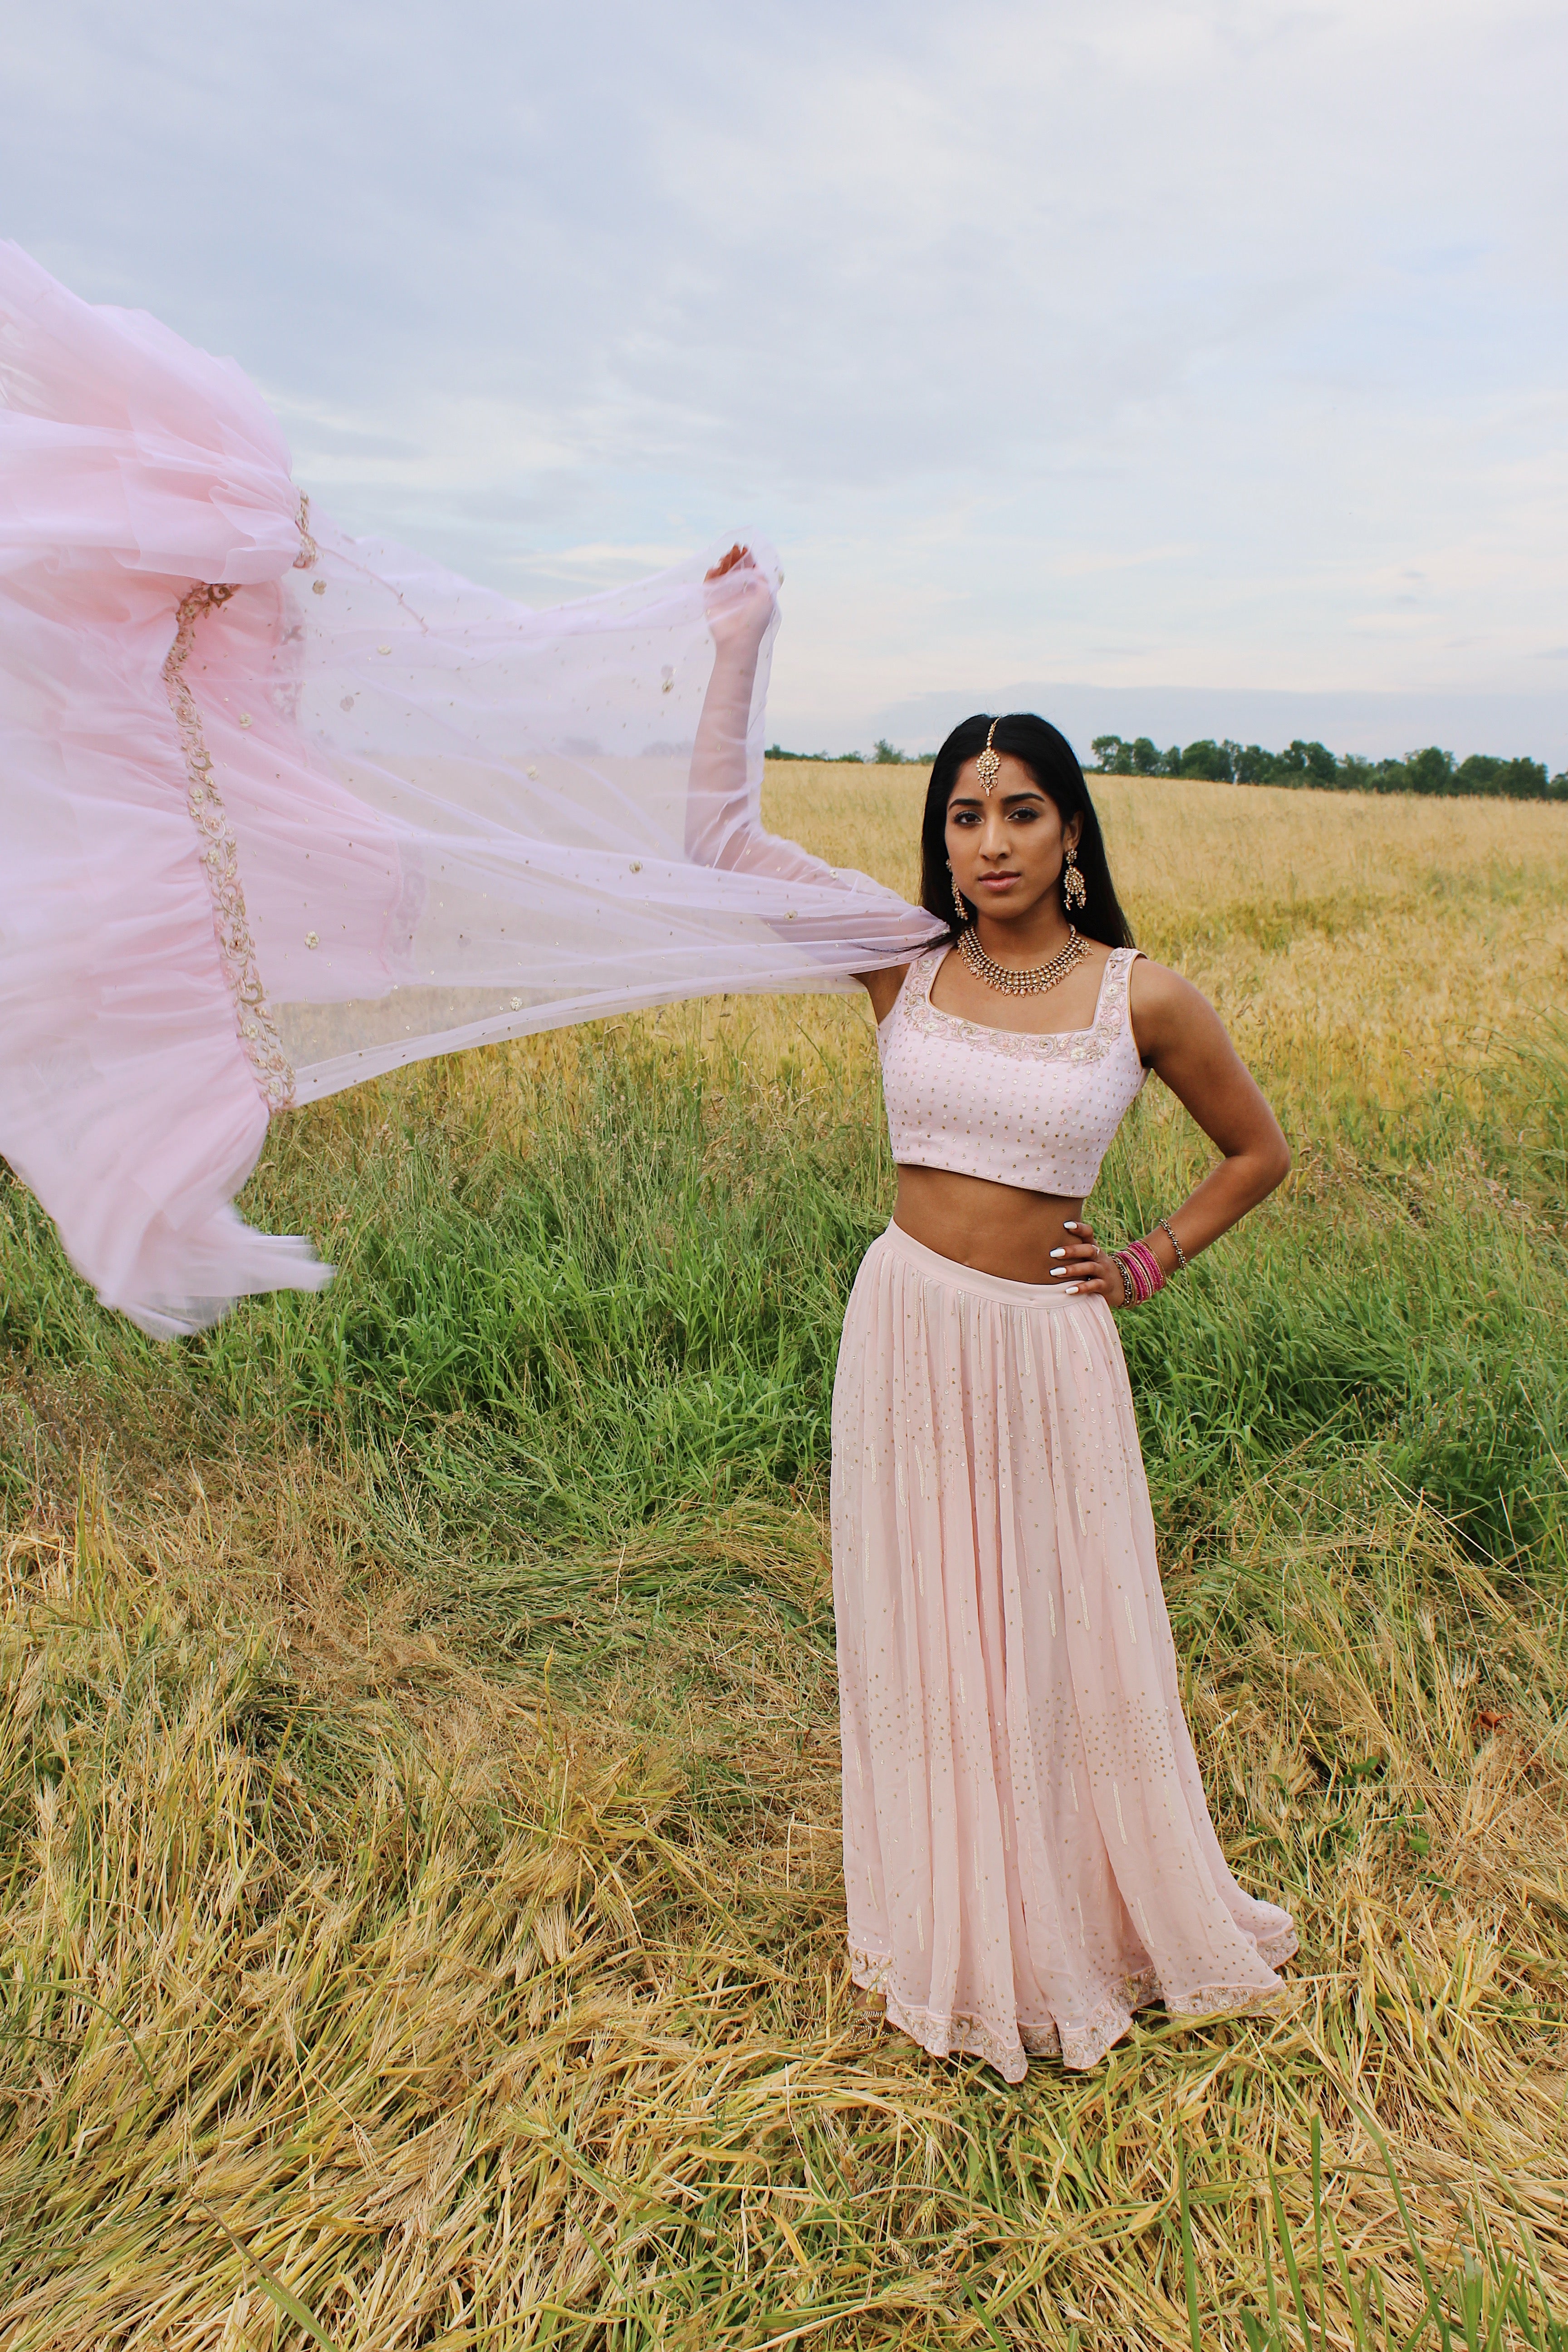 Latest Indian Wedding Lehenga Collection in USA - Blush Rose Pink Lehenga Choli Customized Indian Outfit by Designer Sushma Patel